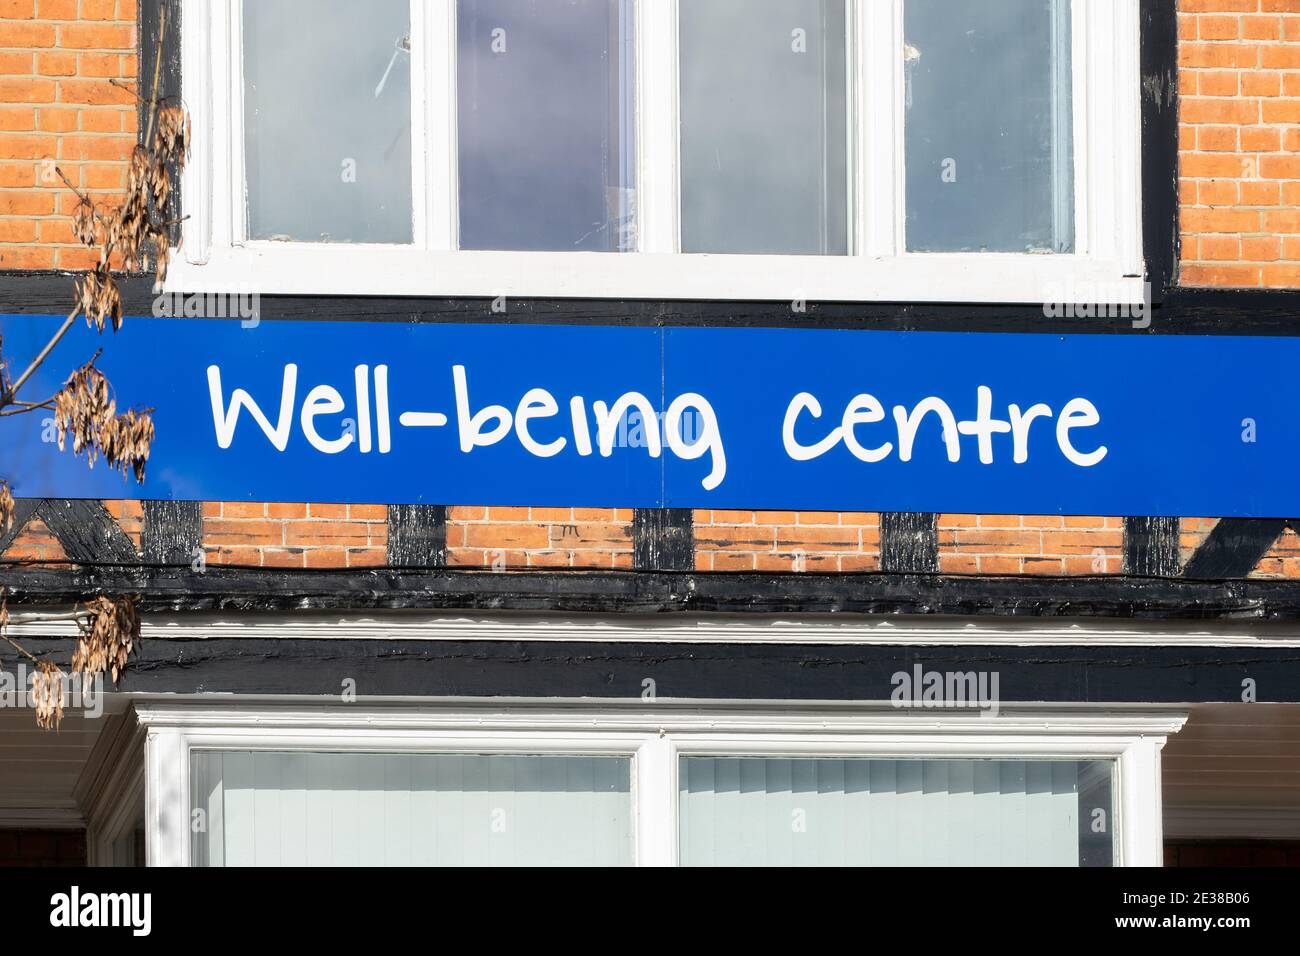 Centre de bien-être offrant de l'aide pour les problèmes de santé mentale, Royaume-Uni Banque D'Images